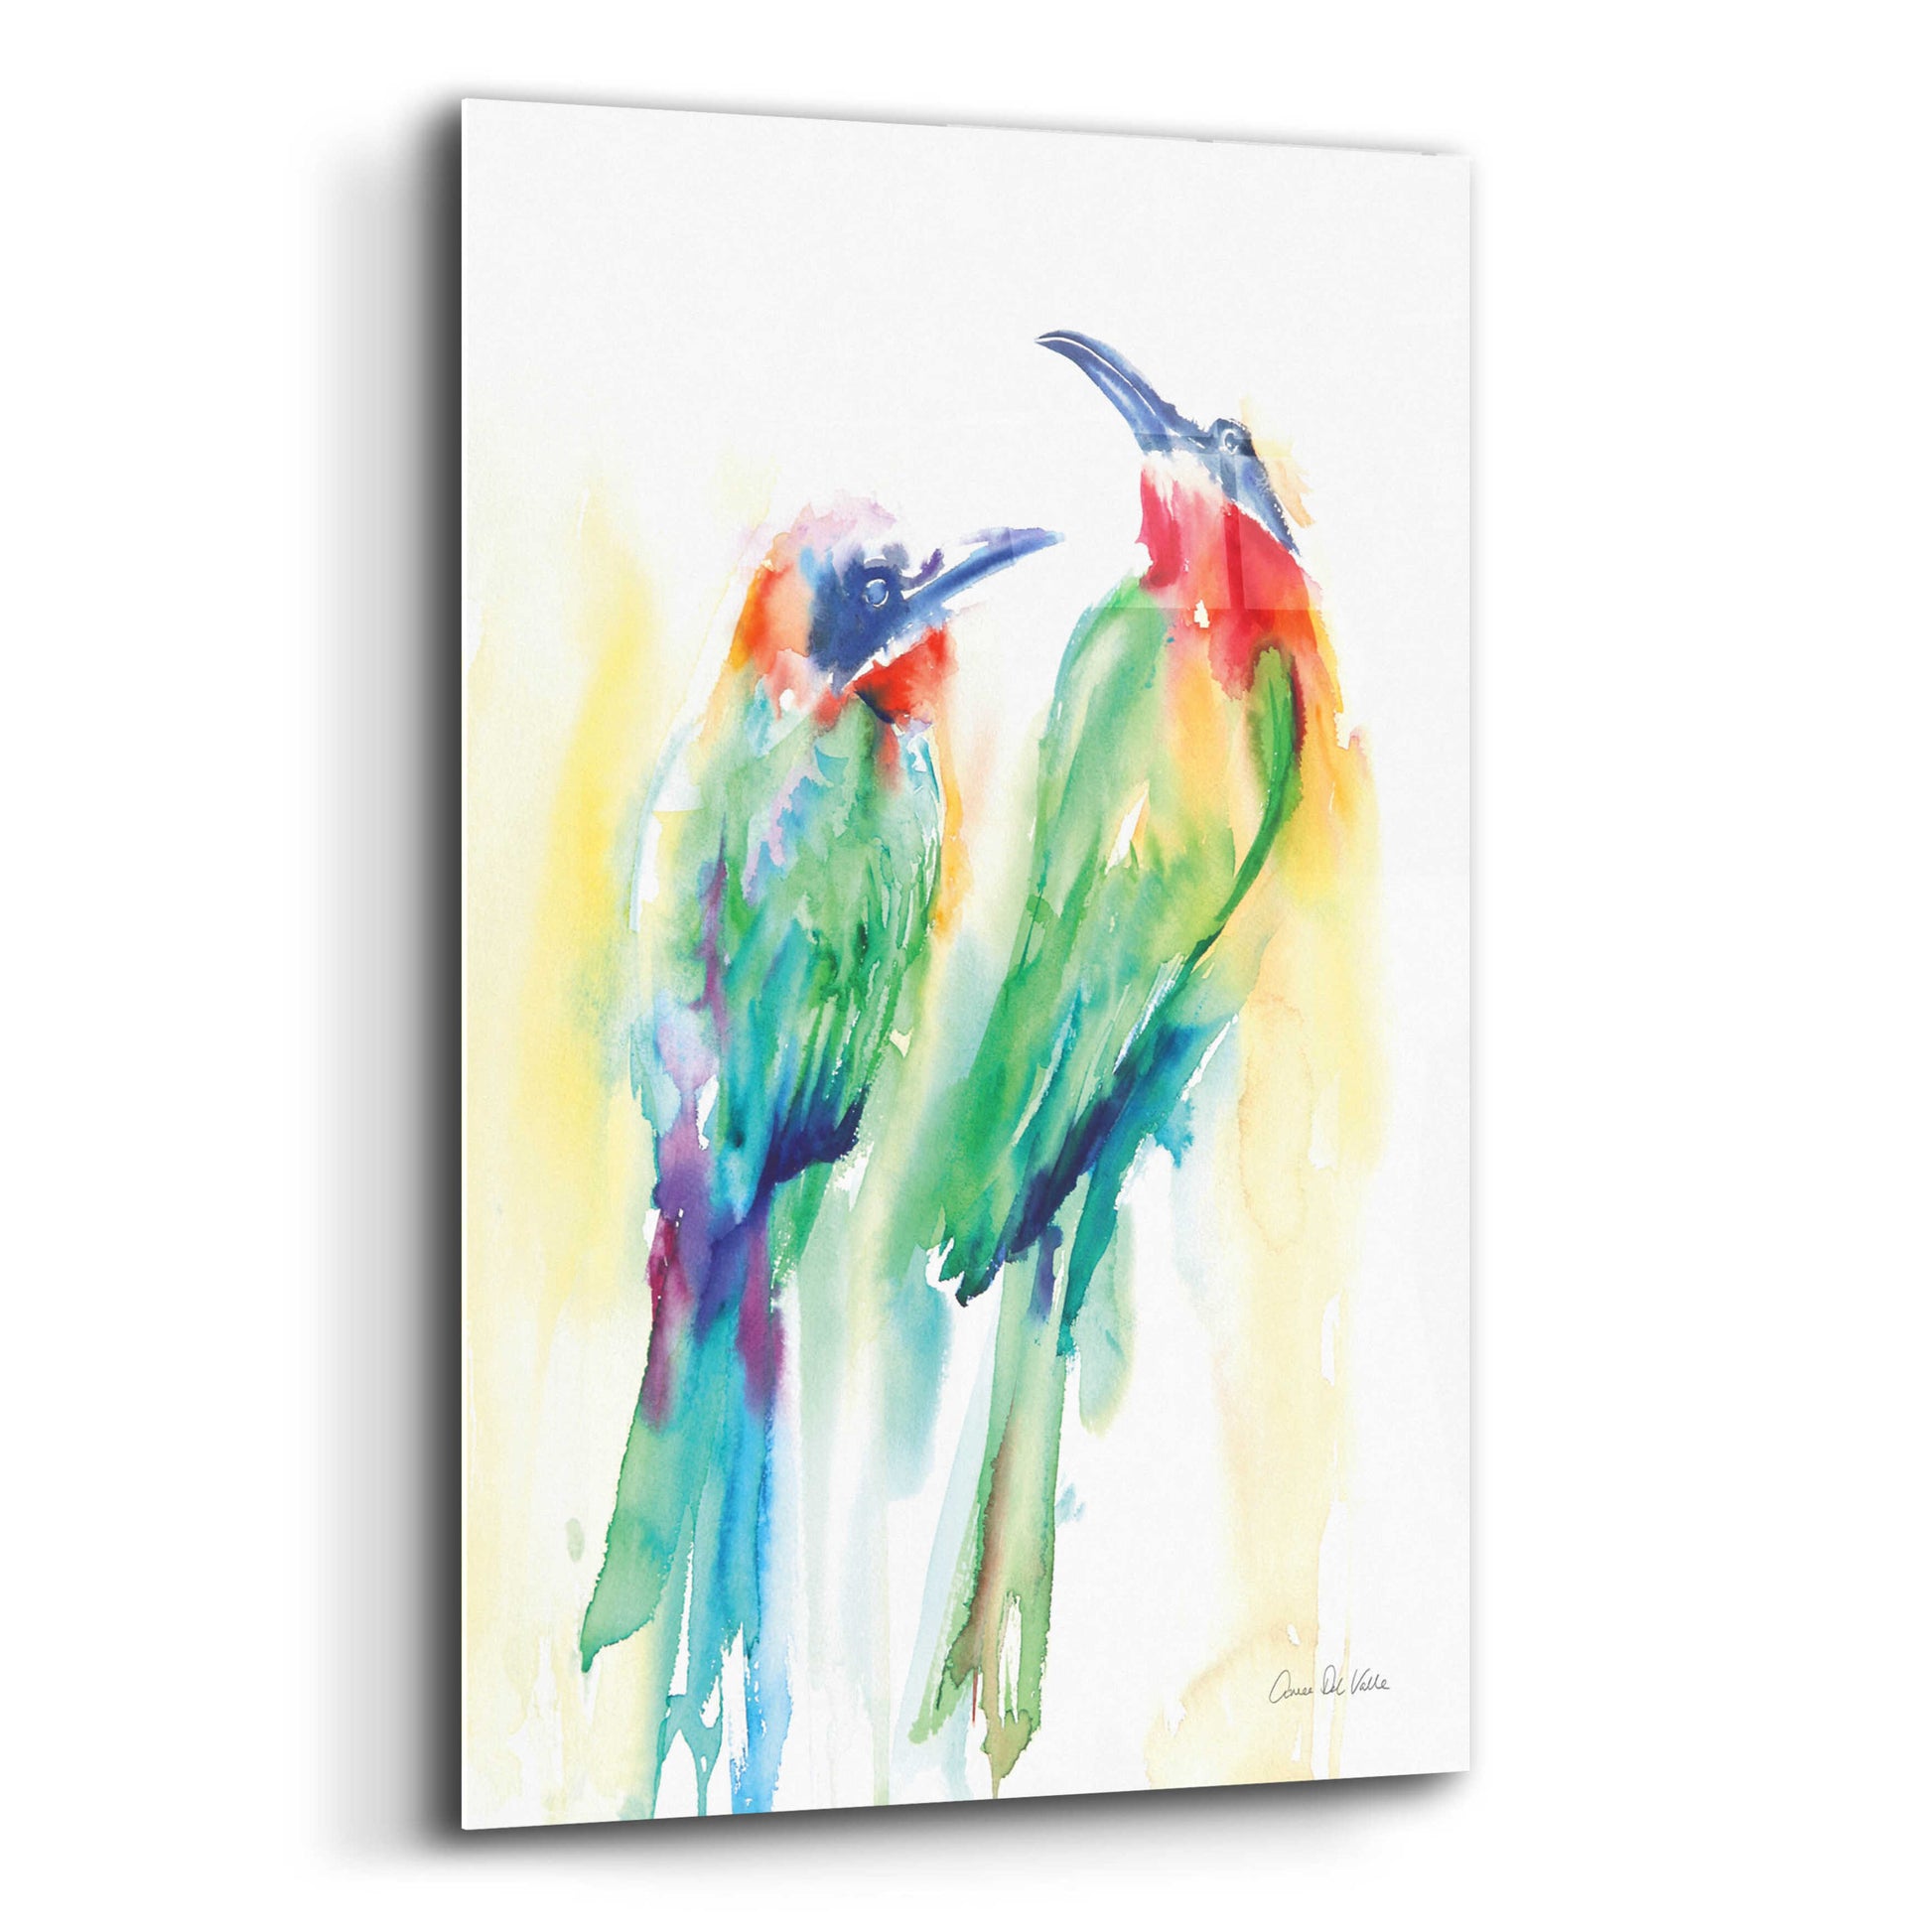 Epic Art 'Tropical Birds' by Alan Majchrowicz, Acrylic Glass Wall Art,12x16